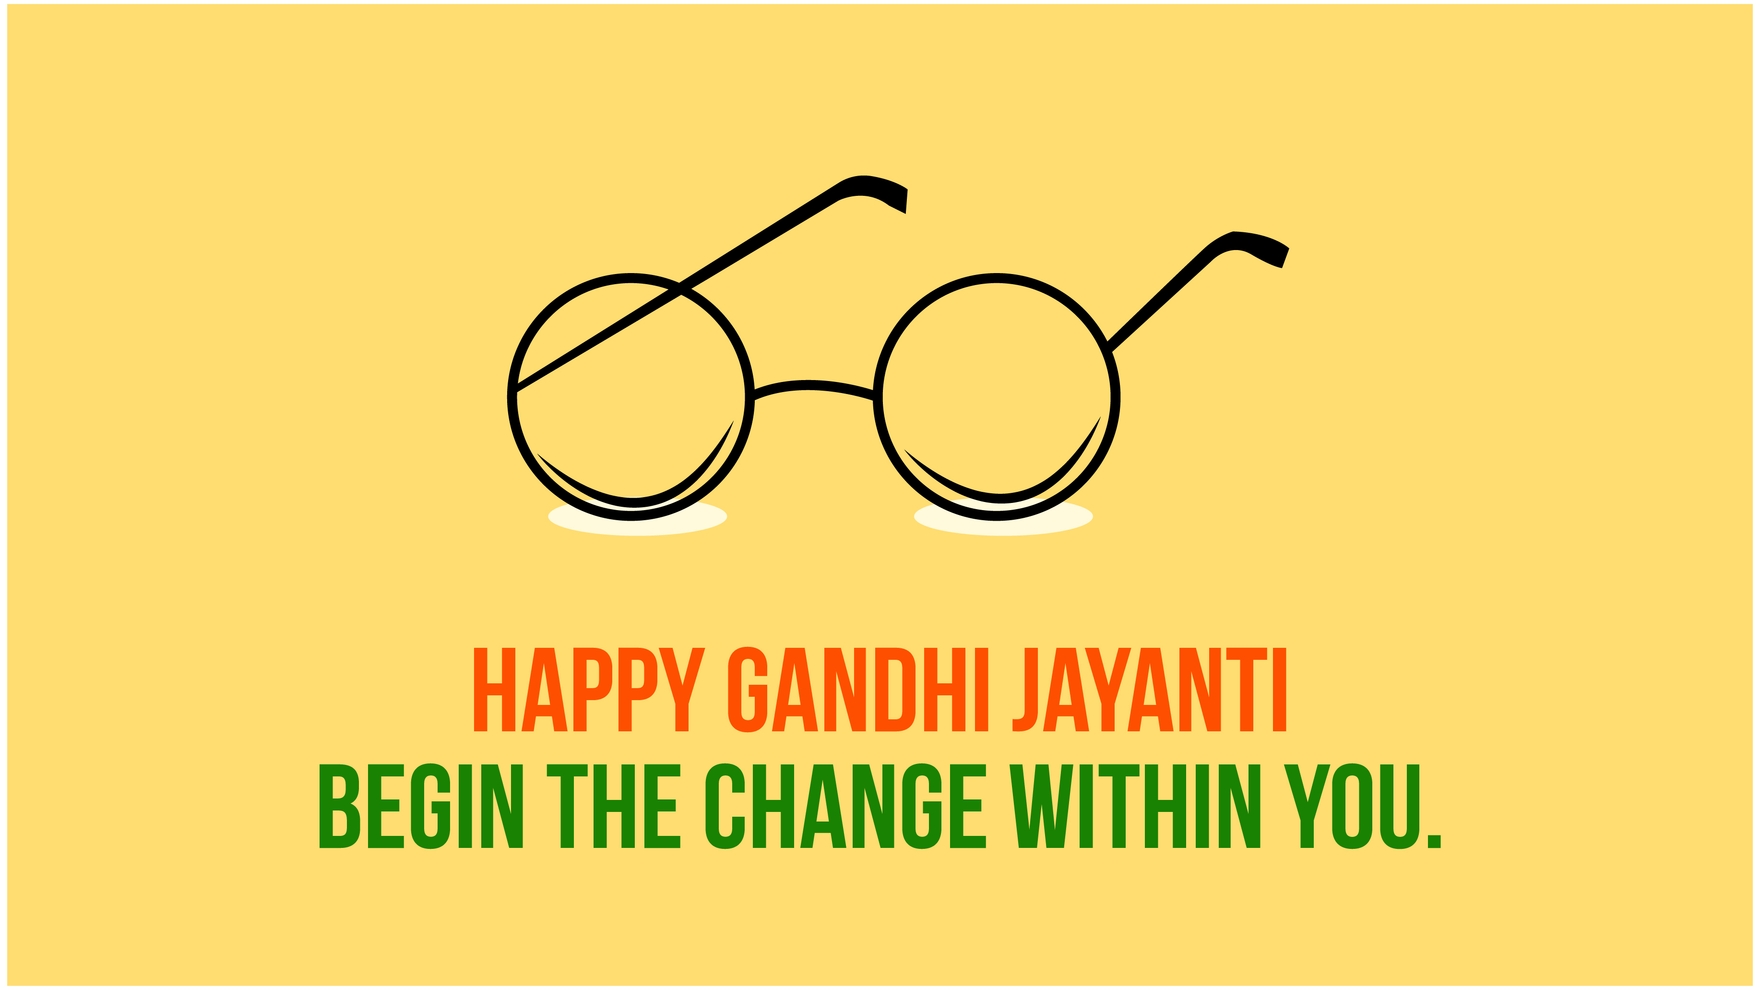 Free Gandhi Jayanti Flyer Background